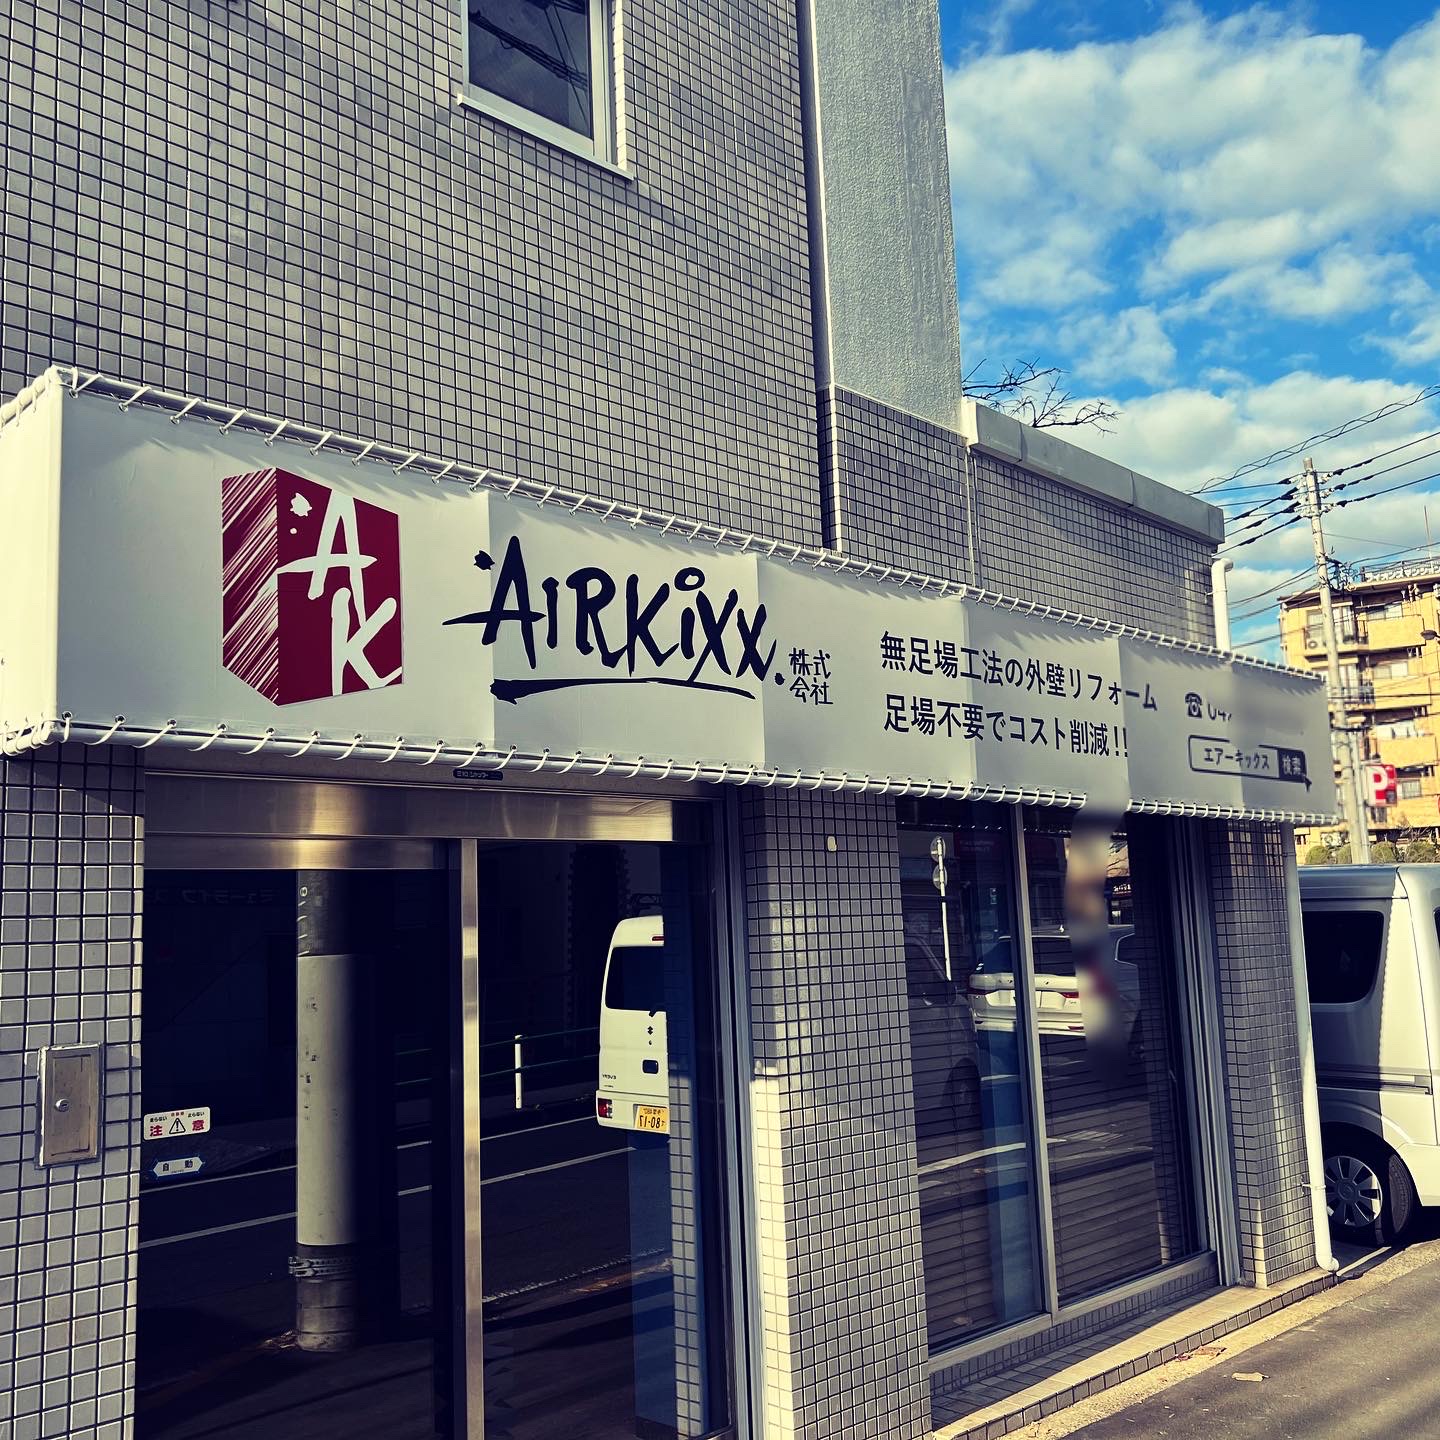 AIRKIXX株式会社の営業所が完成いたしました。